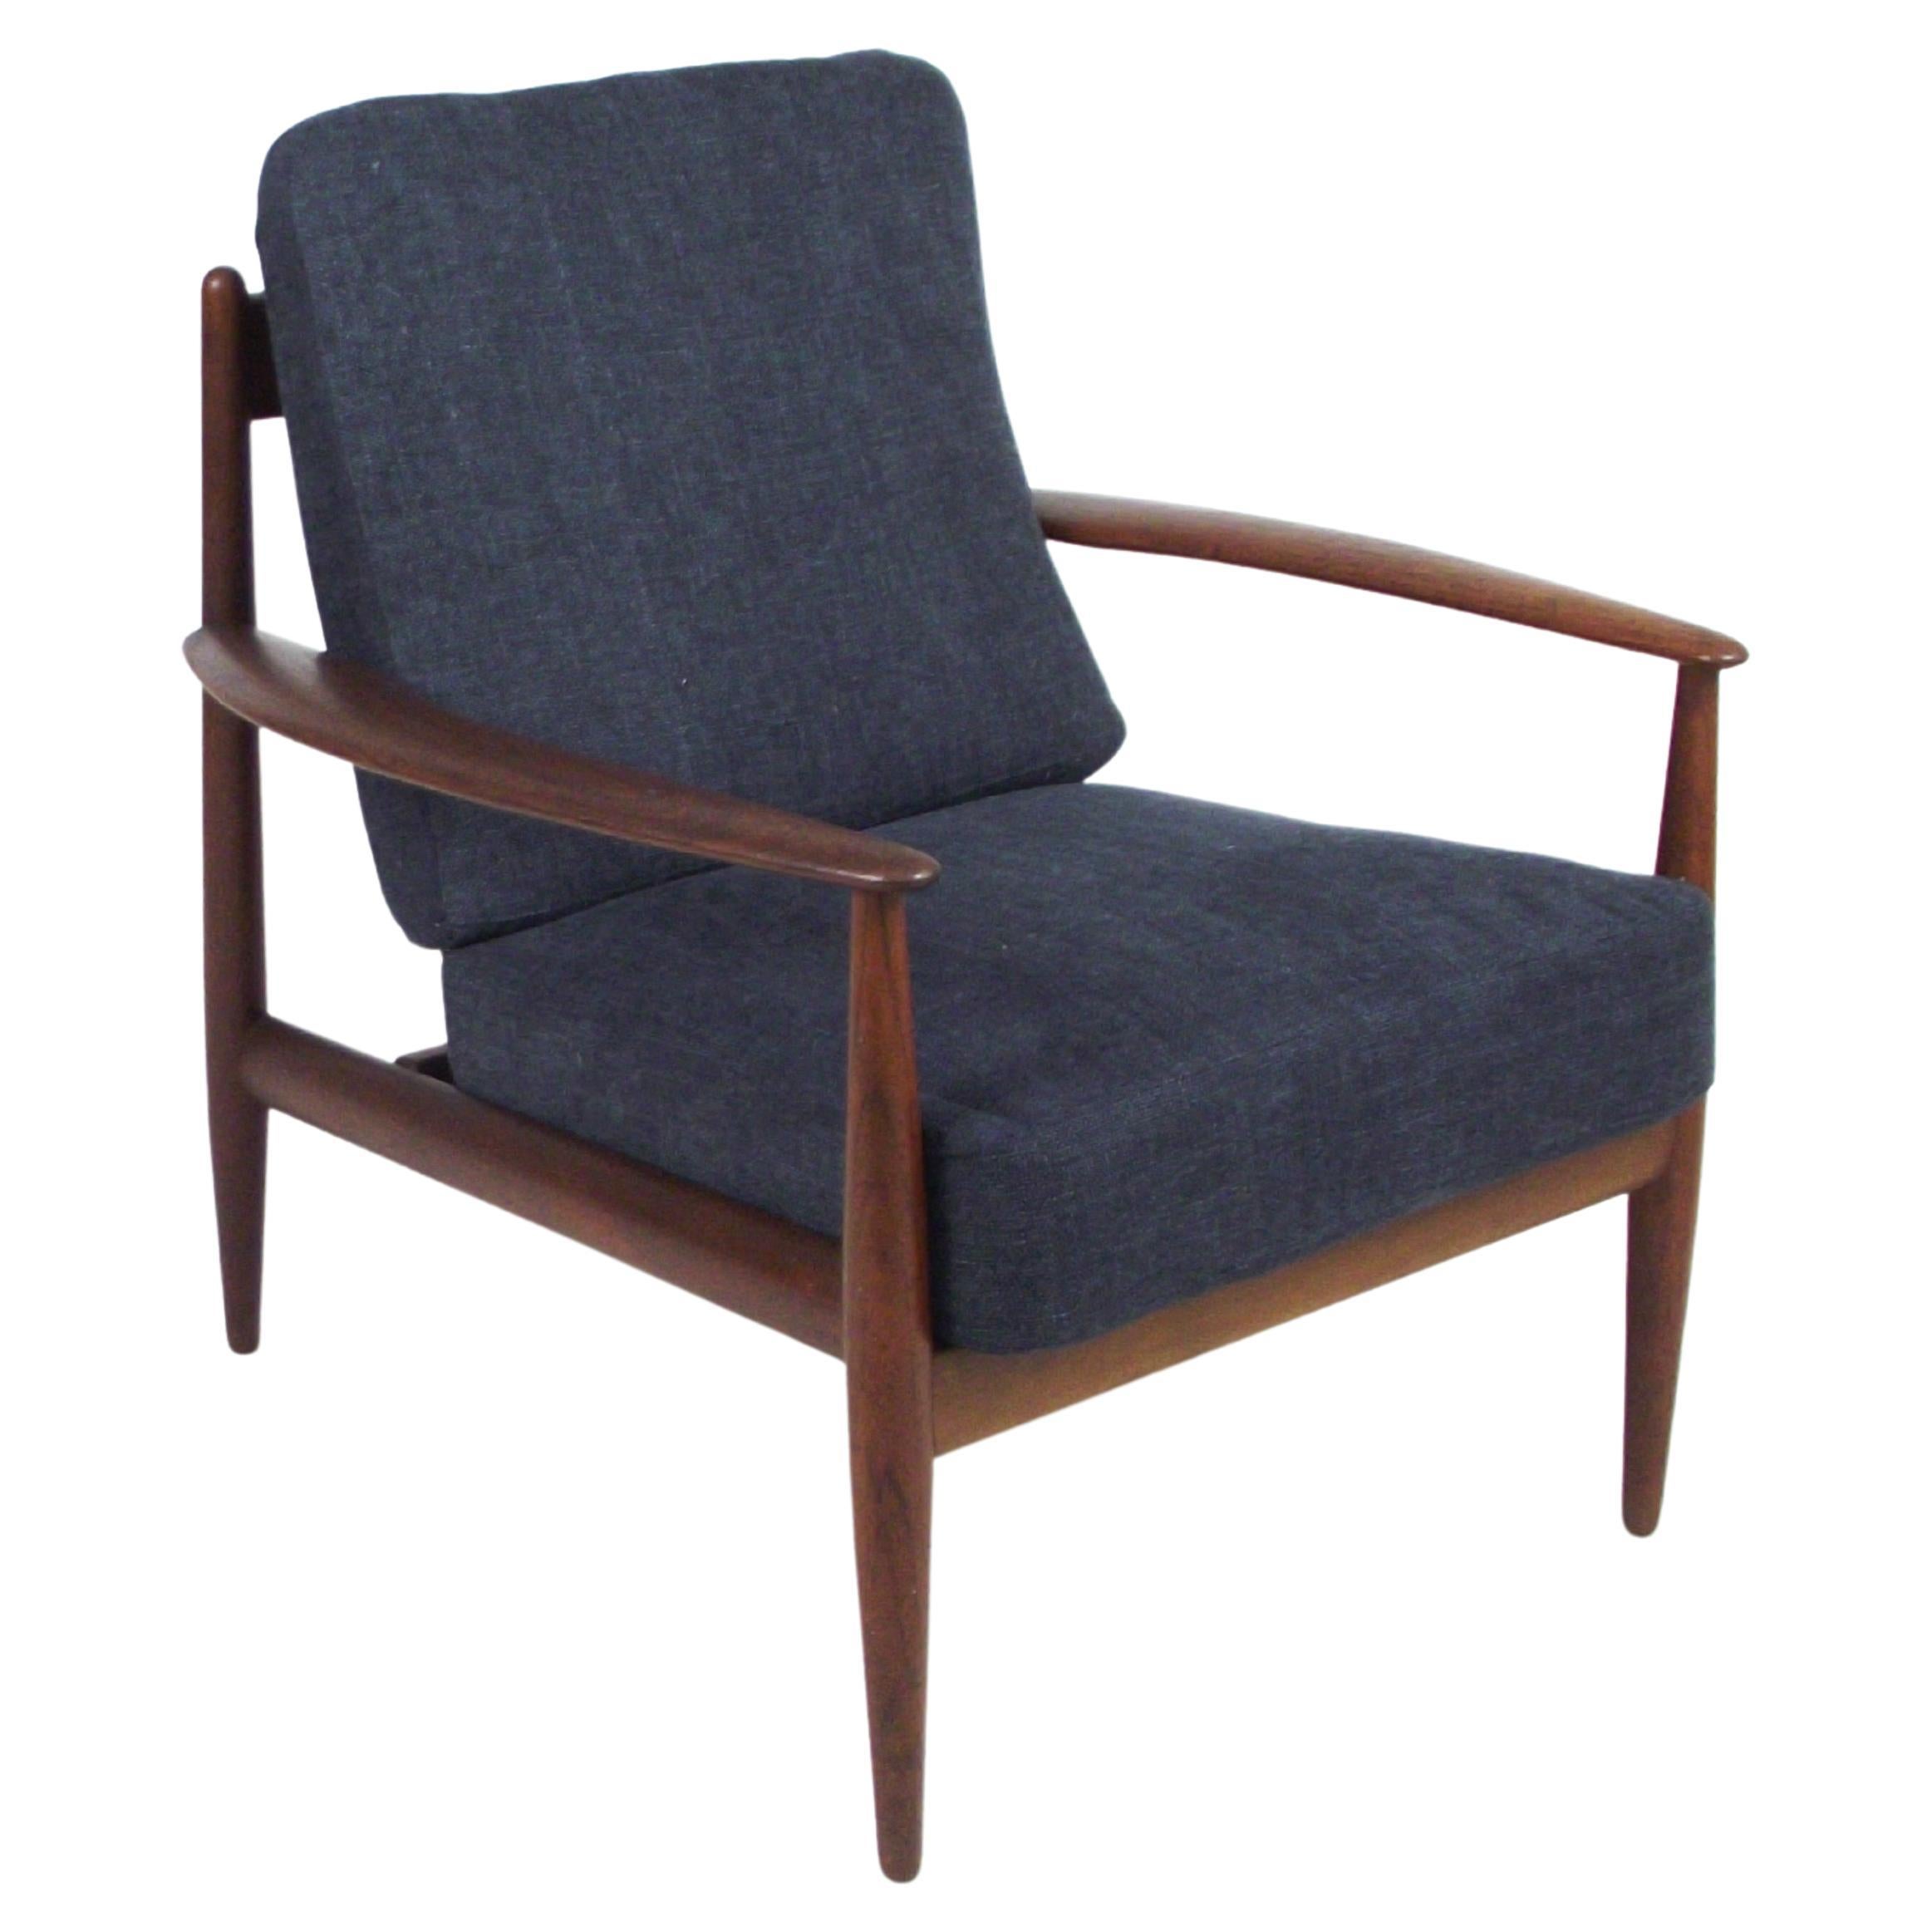 Sessel entworfen von Grete Jalk für France and Son Dänisches Design der 1950er Jahre